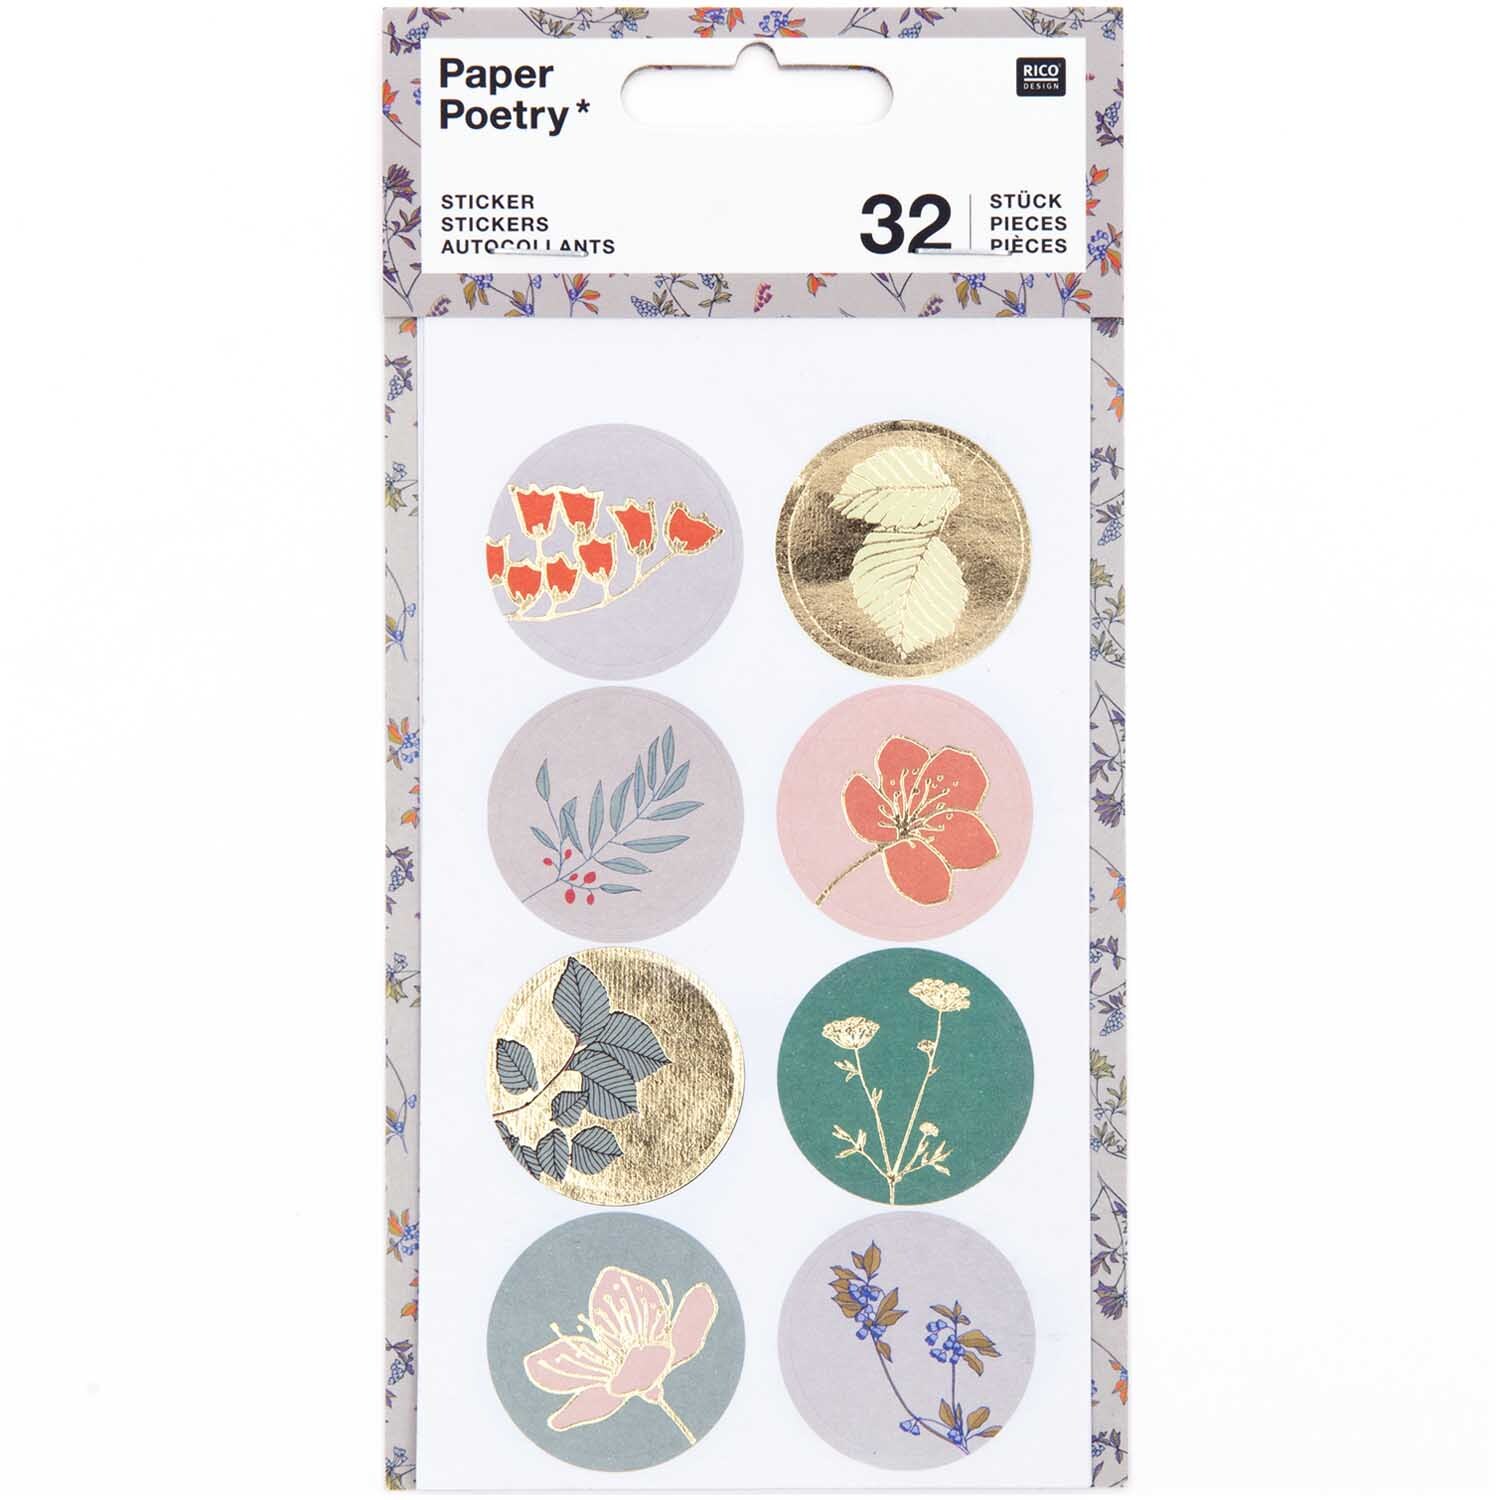 Paper Poetry Sticker Pflanzen klein 4 Blatt